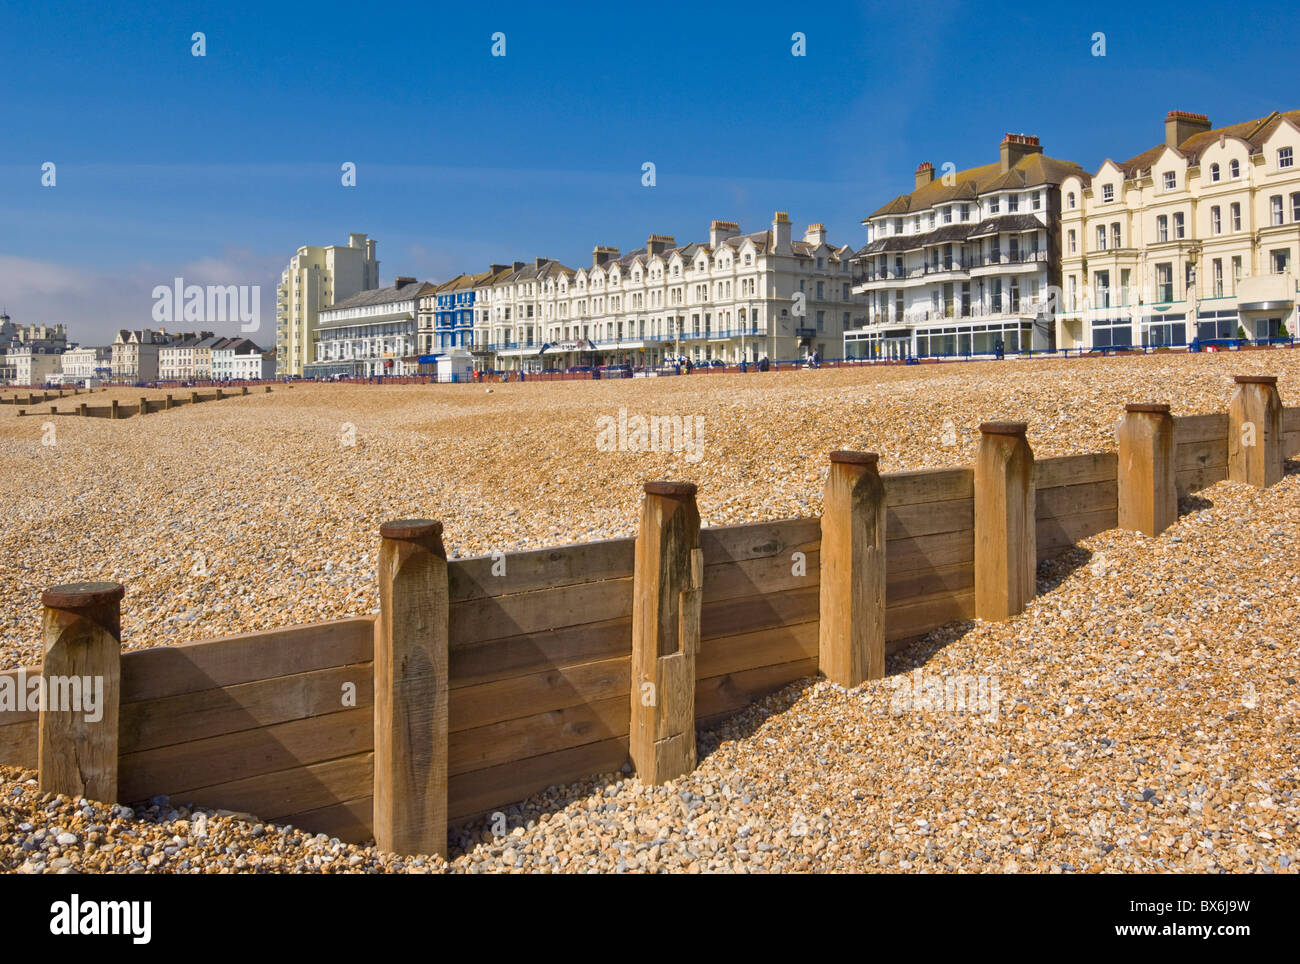 Plage de galets et d'épis, hôtels sur la promenade du front de mer, à Eastbourne, East Sussex, Angleterre, Royaume-Uni, Europe Banque D'Images